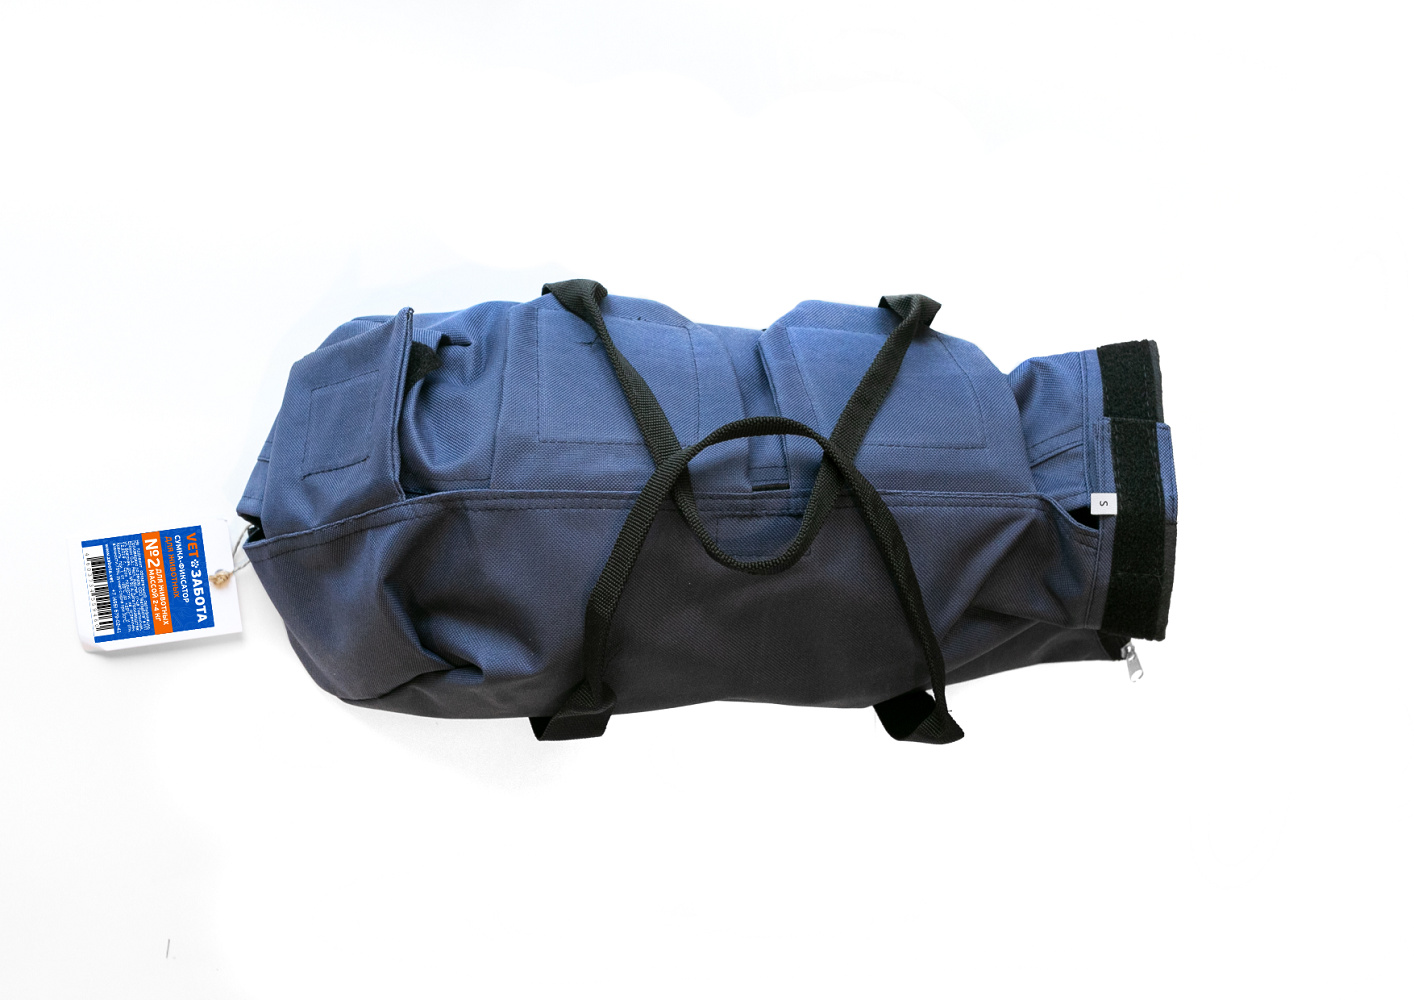 VETЗАБОТА VETЗАБОТА сумка для фиксации животных, синяя (250 г) пеленки для кошек и собак vetзабота 60х60см 5шт